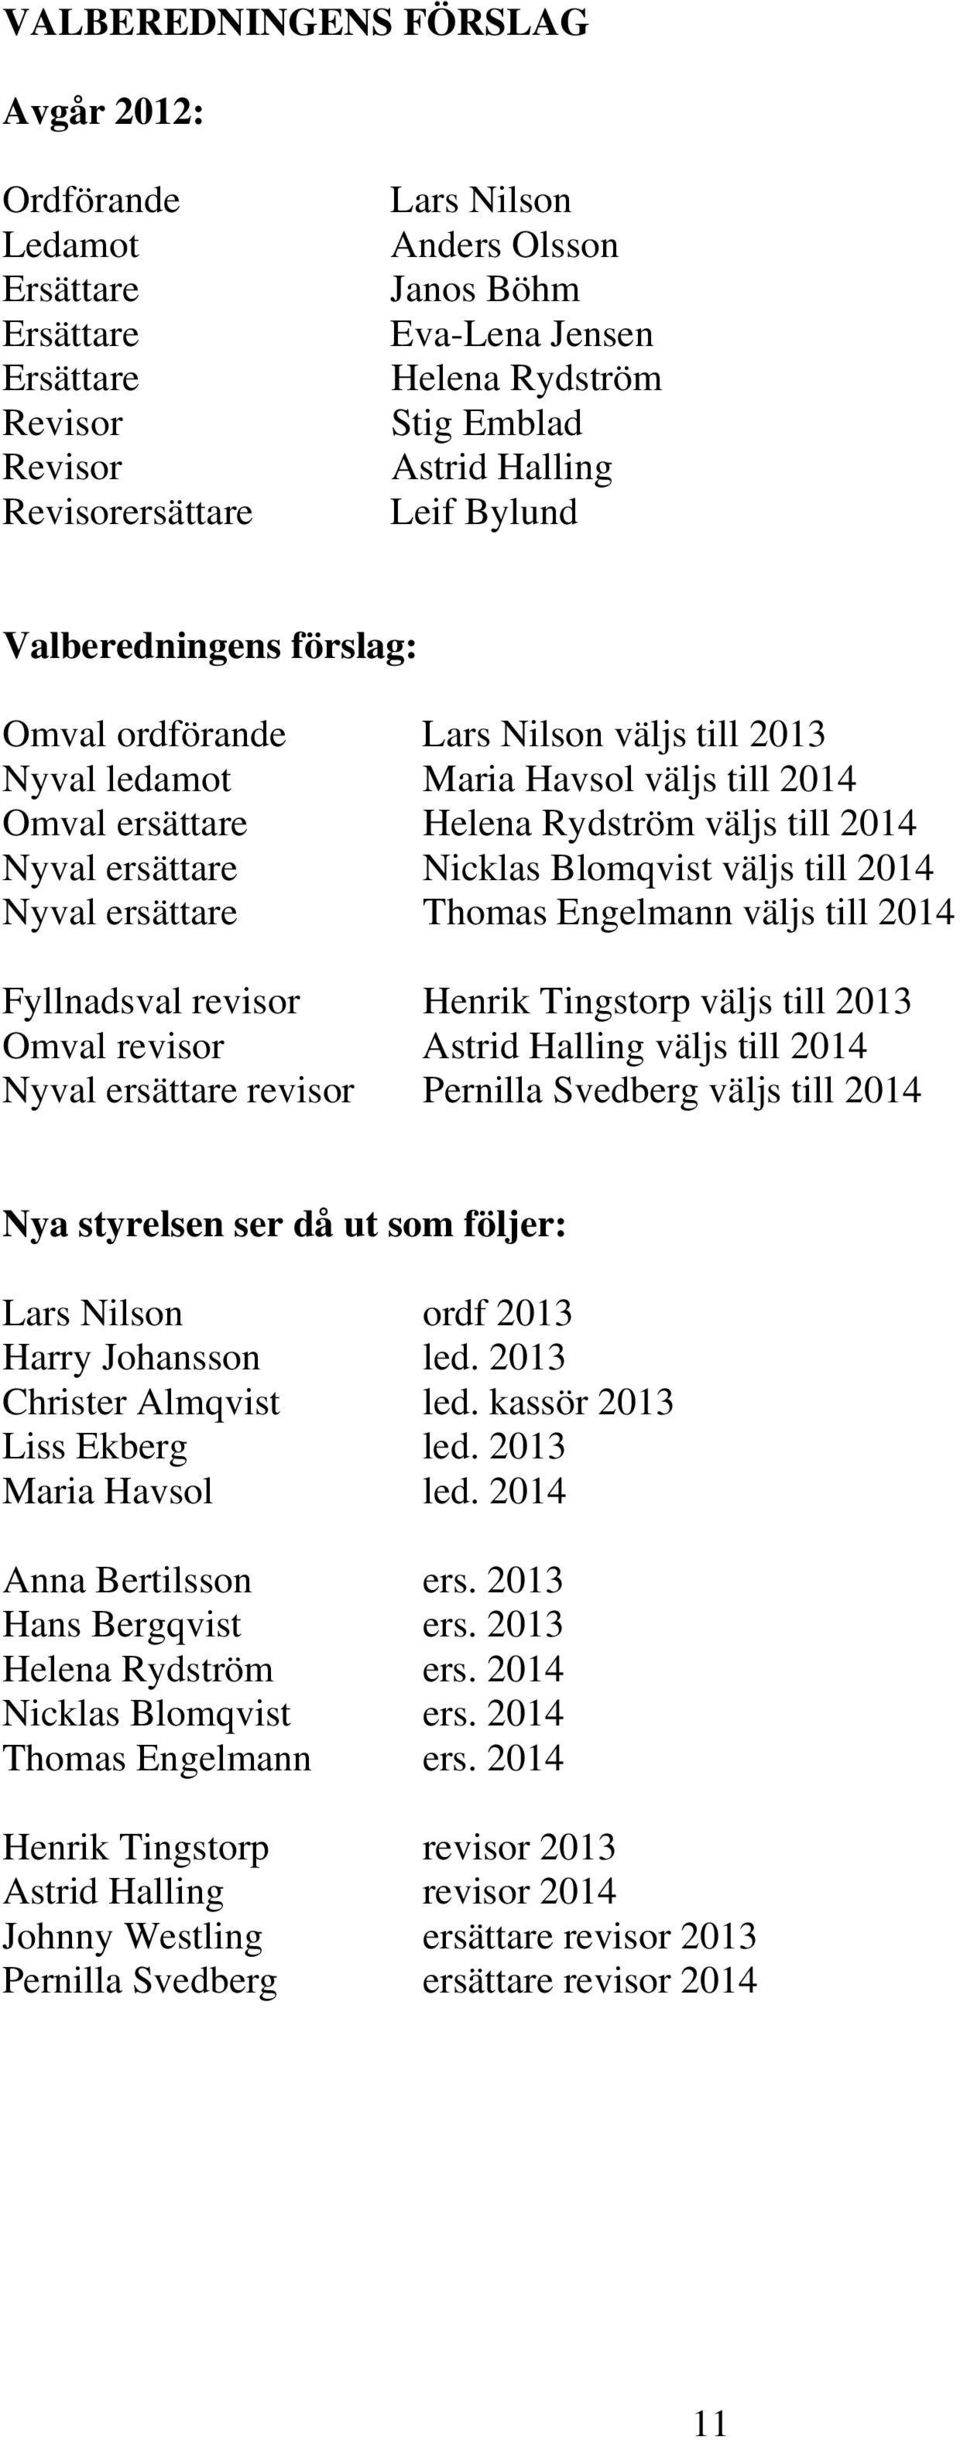 ersättare Nicklas Blomqvist väljs till 2014 Nyval ersättare Thomas Engelmann väljs till 2014 Fyllnadsval revisor Henrik Tingstorp väljs till 2013 Omval revisor Astrid Halling väljs till 2014 Nyval